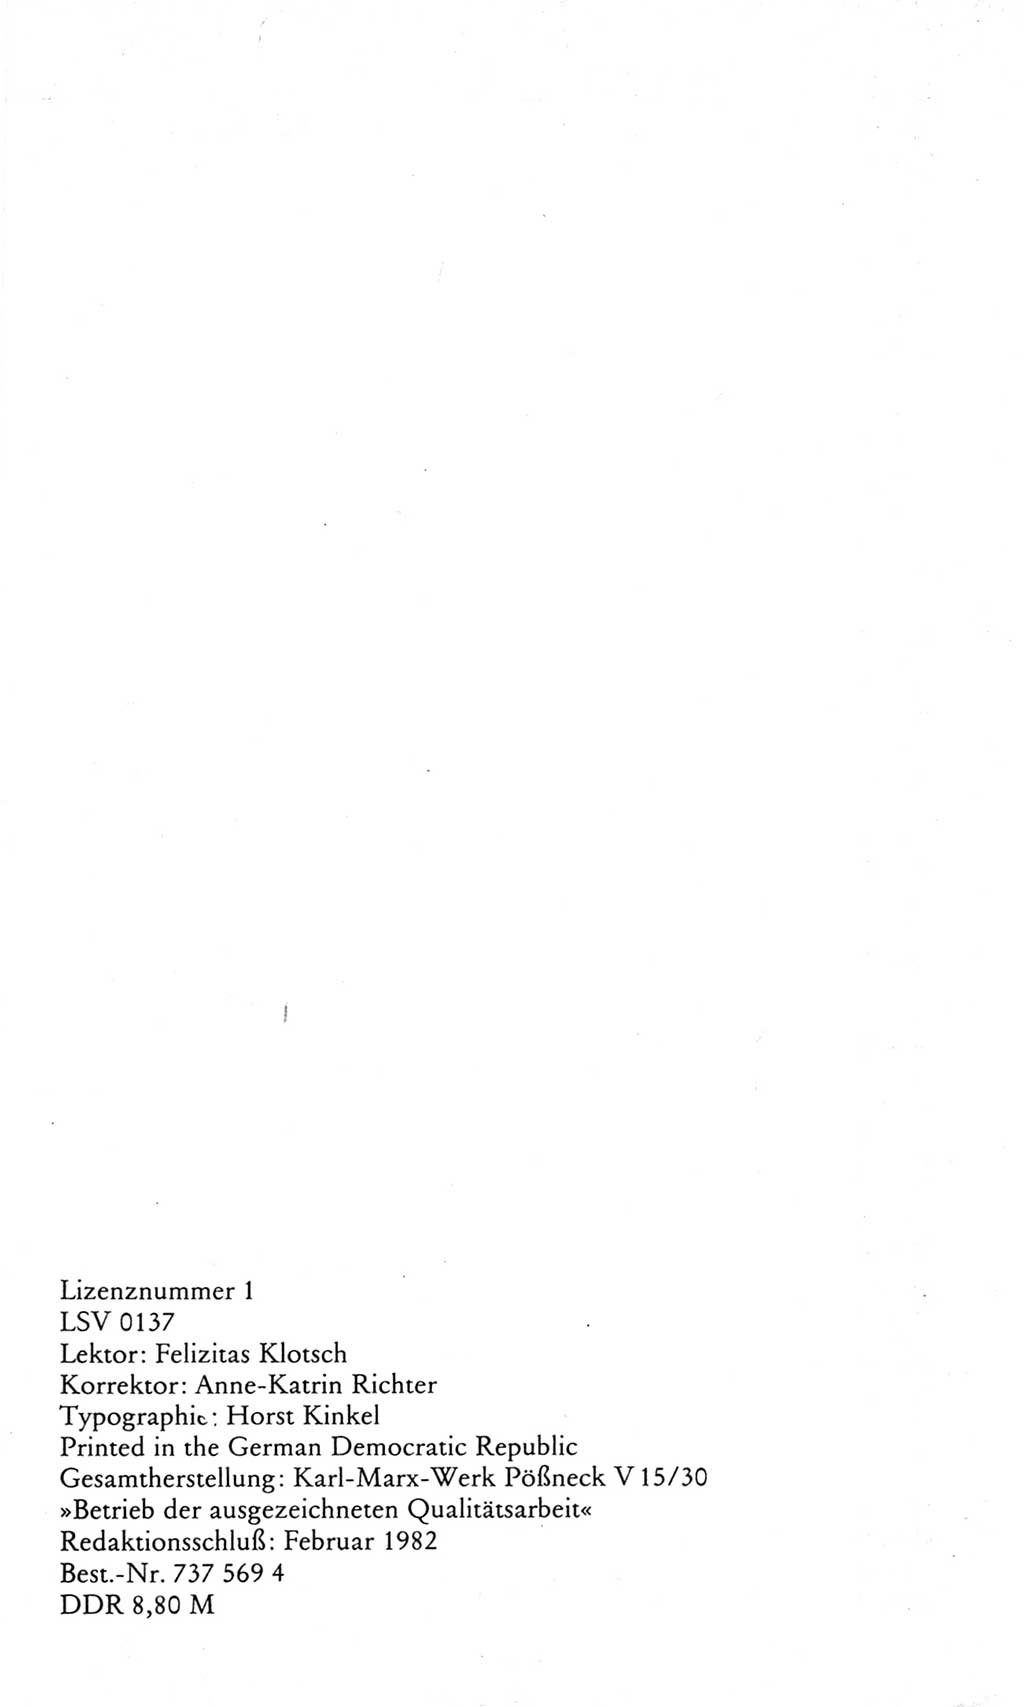 Wörterbuch des wissenschaftlichen Kommunismus [Deutsche Demokratische Republik (DDR)] 1982, Seite 428 (Wb. wiss. Komm. DDR 1982, S. 428)